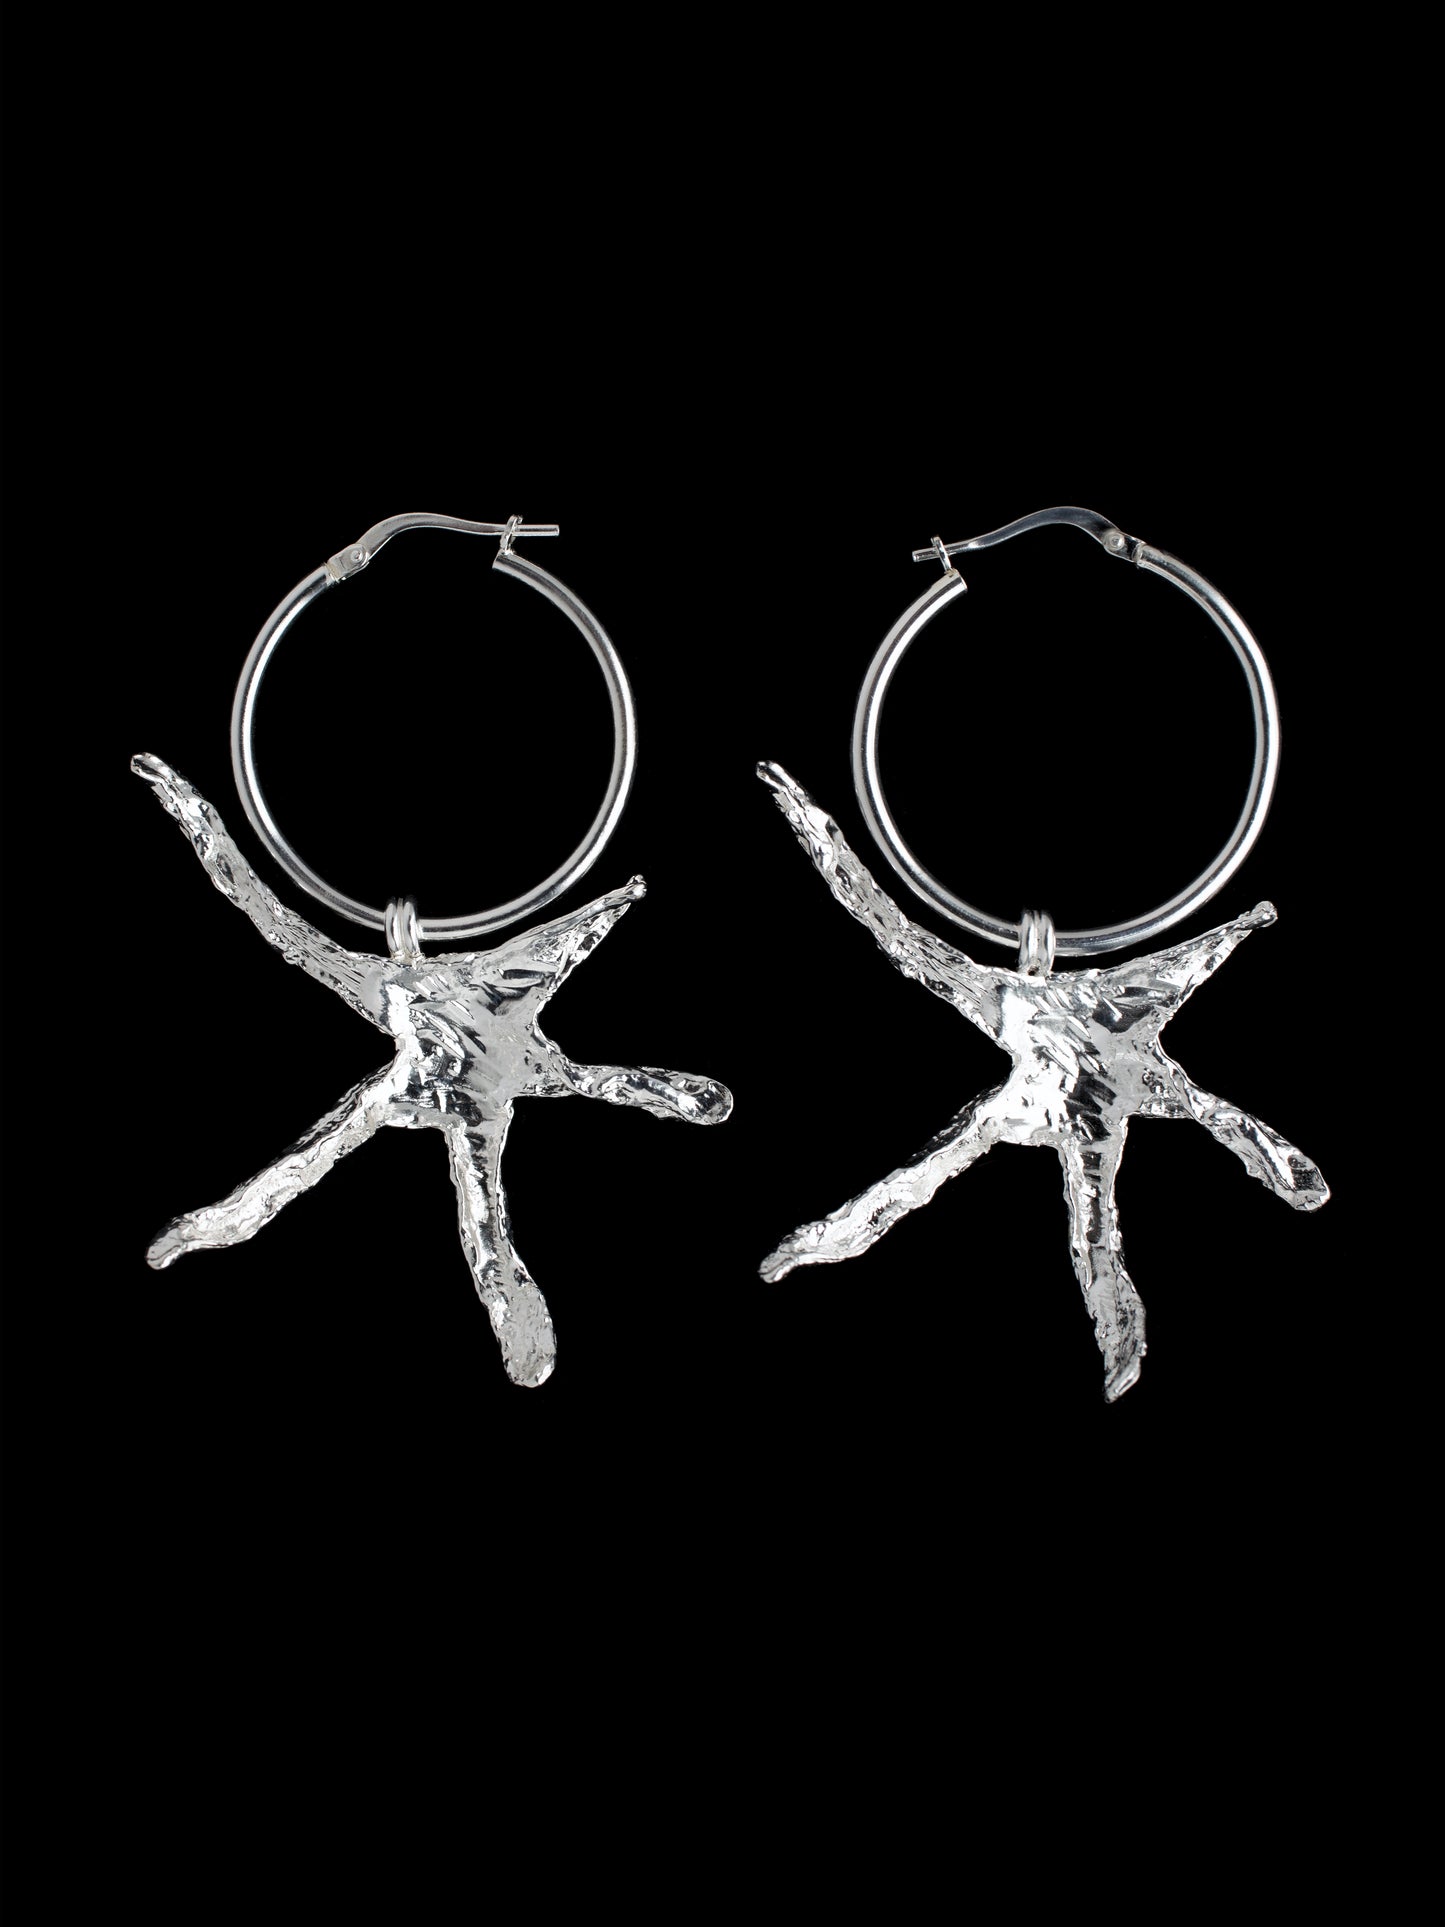 Large organic star shaped hoop earrings handmade in silver